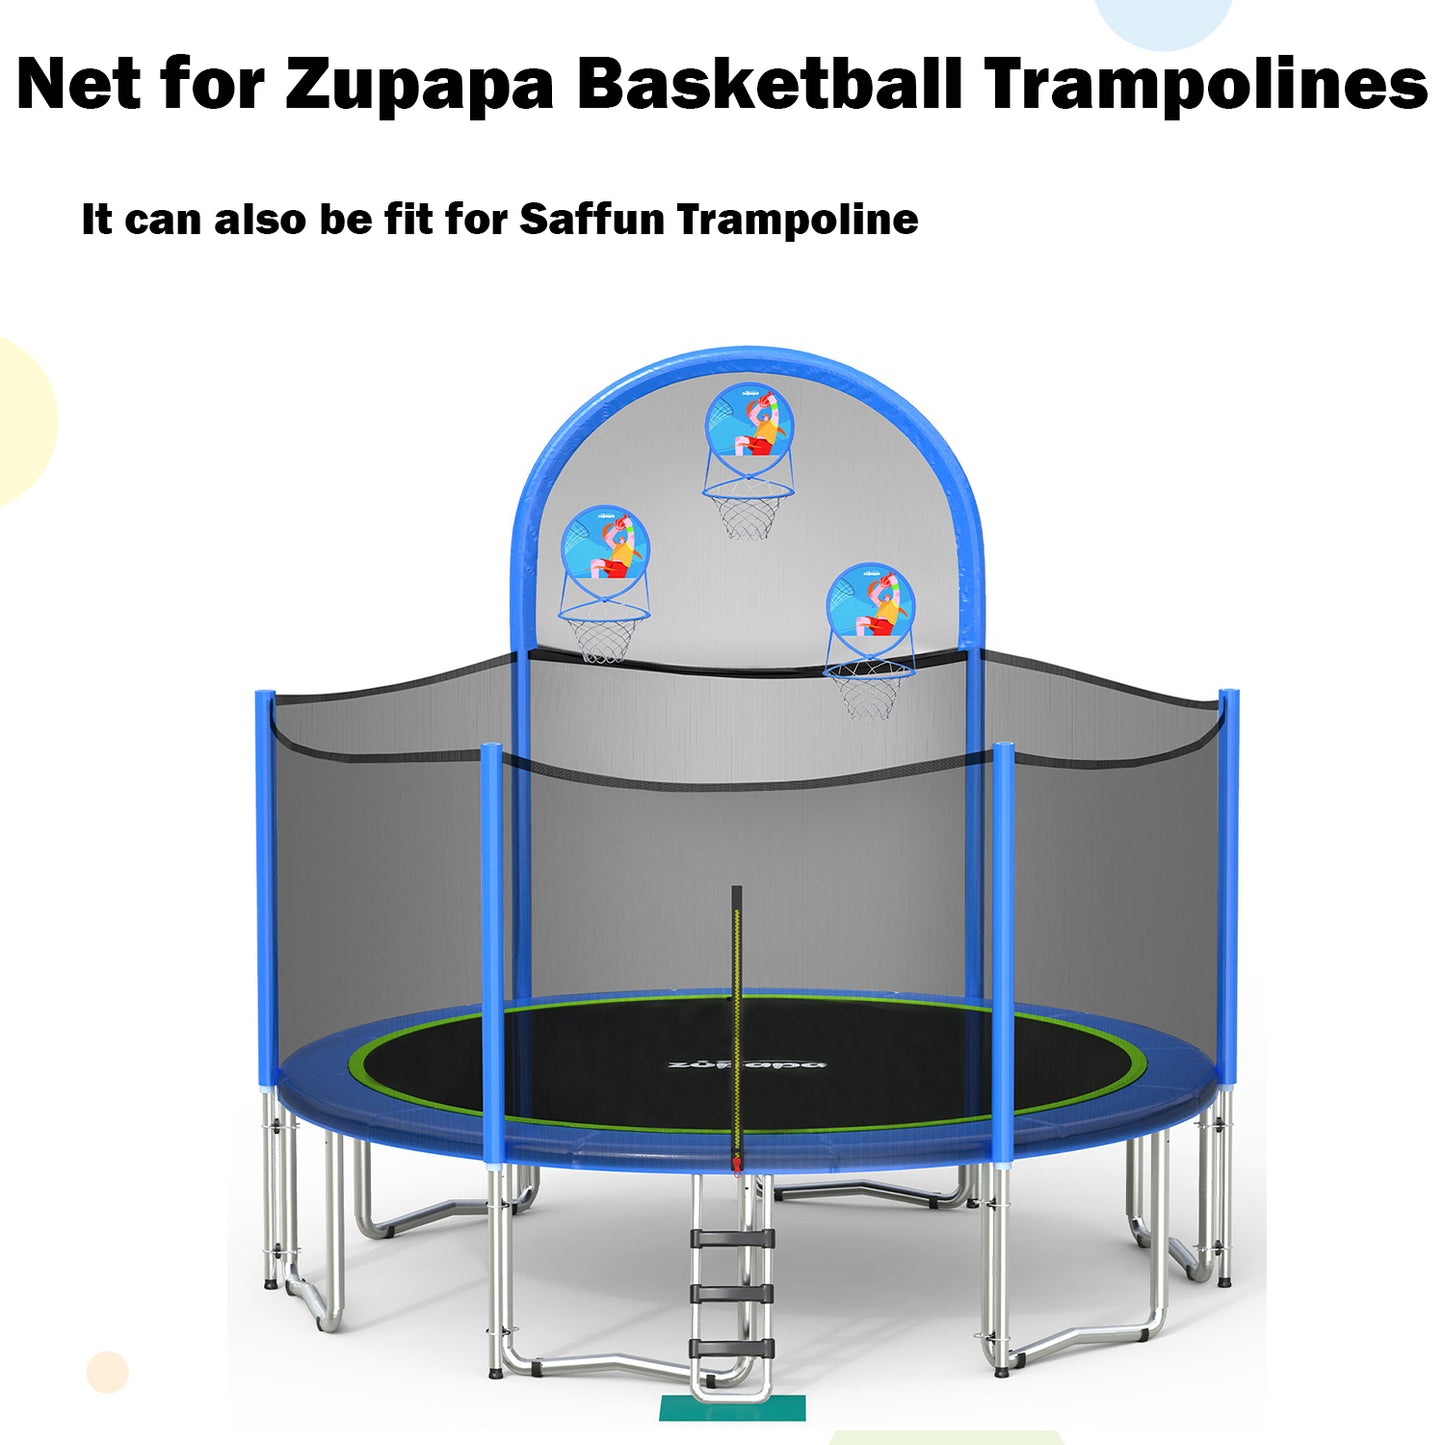 Zupapa 15 FT Safefy Enclosure Net for Basketball Trampolines